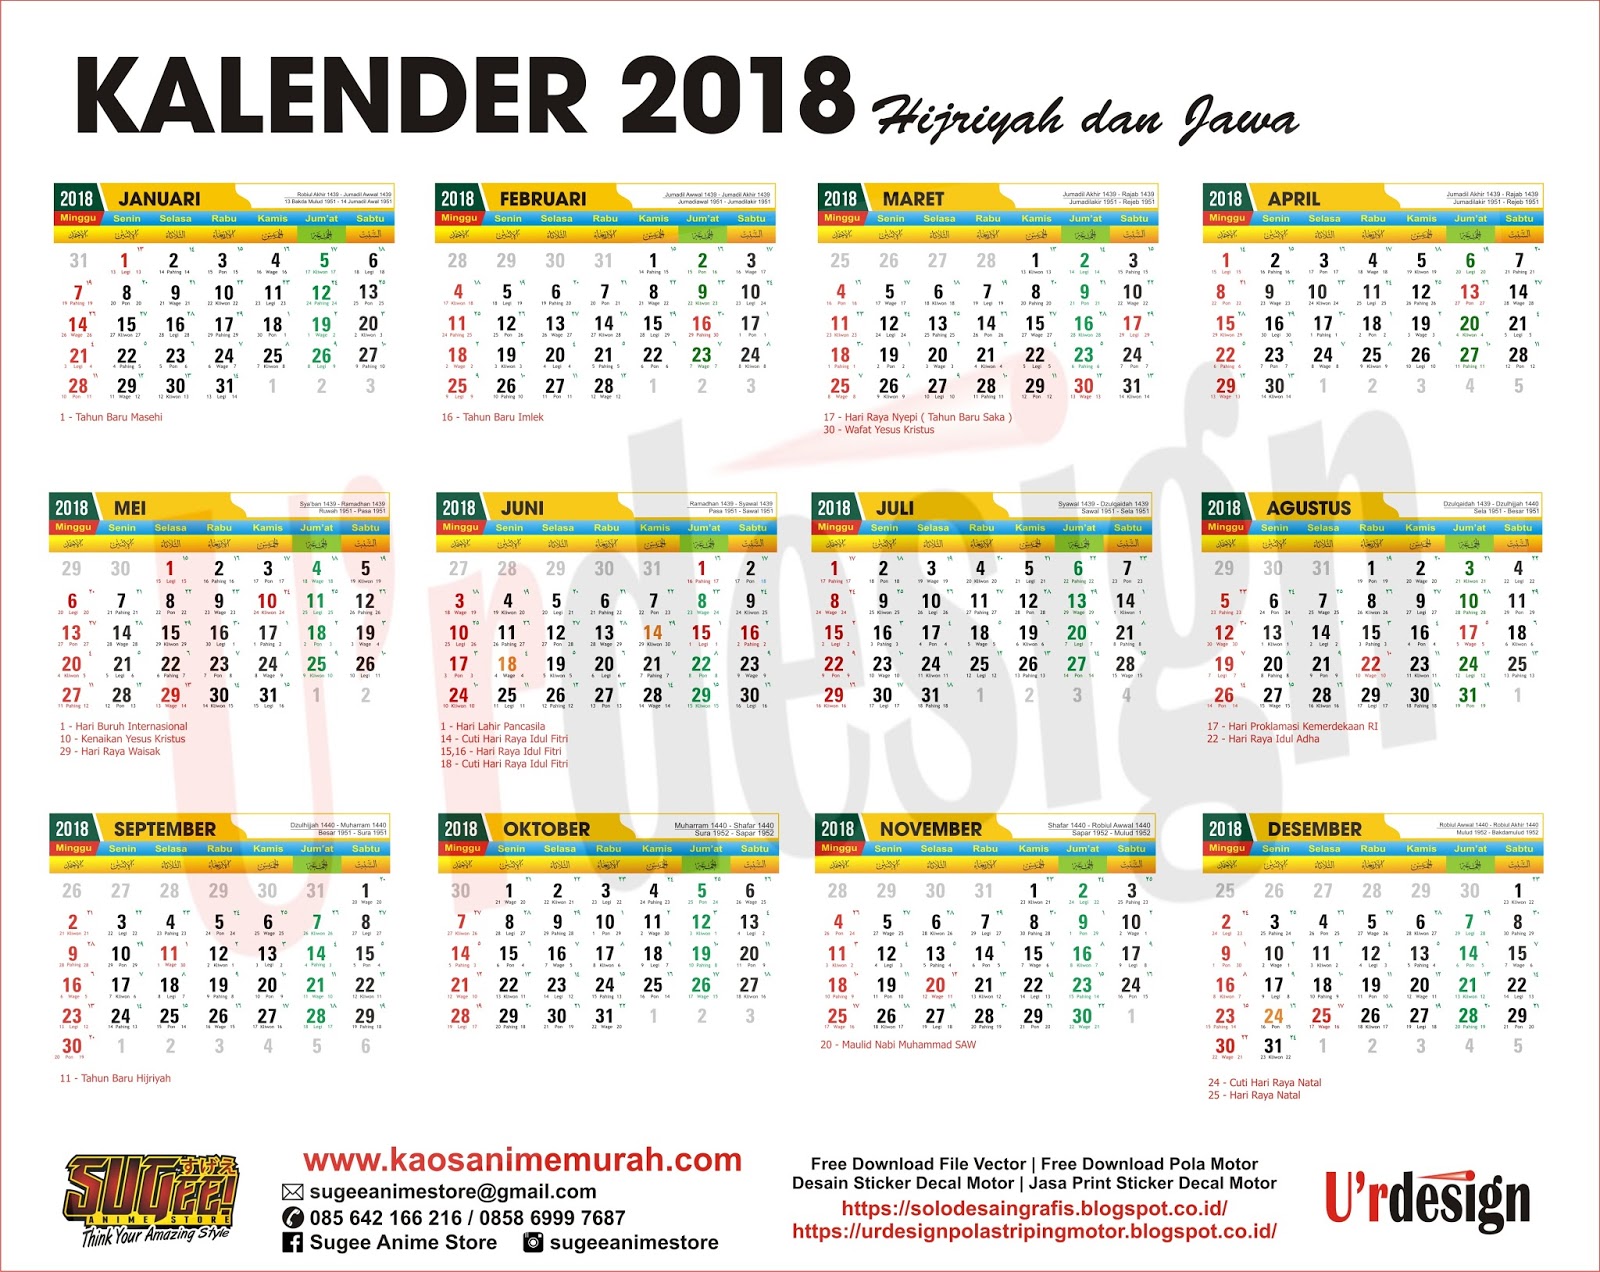 Free Download kalender 2018 Lengkap Hijriyah Jawa ~ U'rdesign